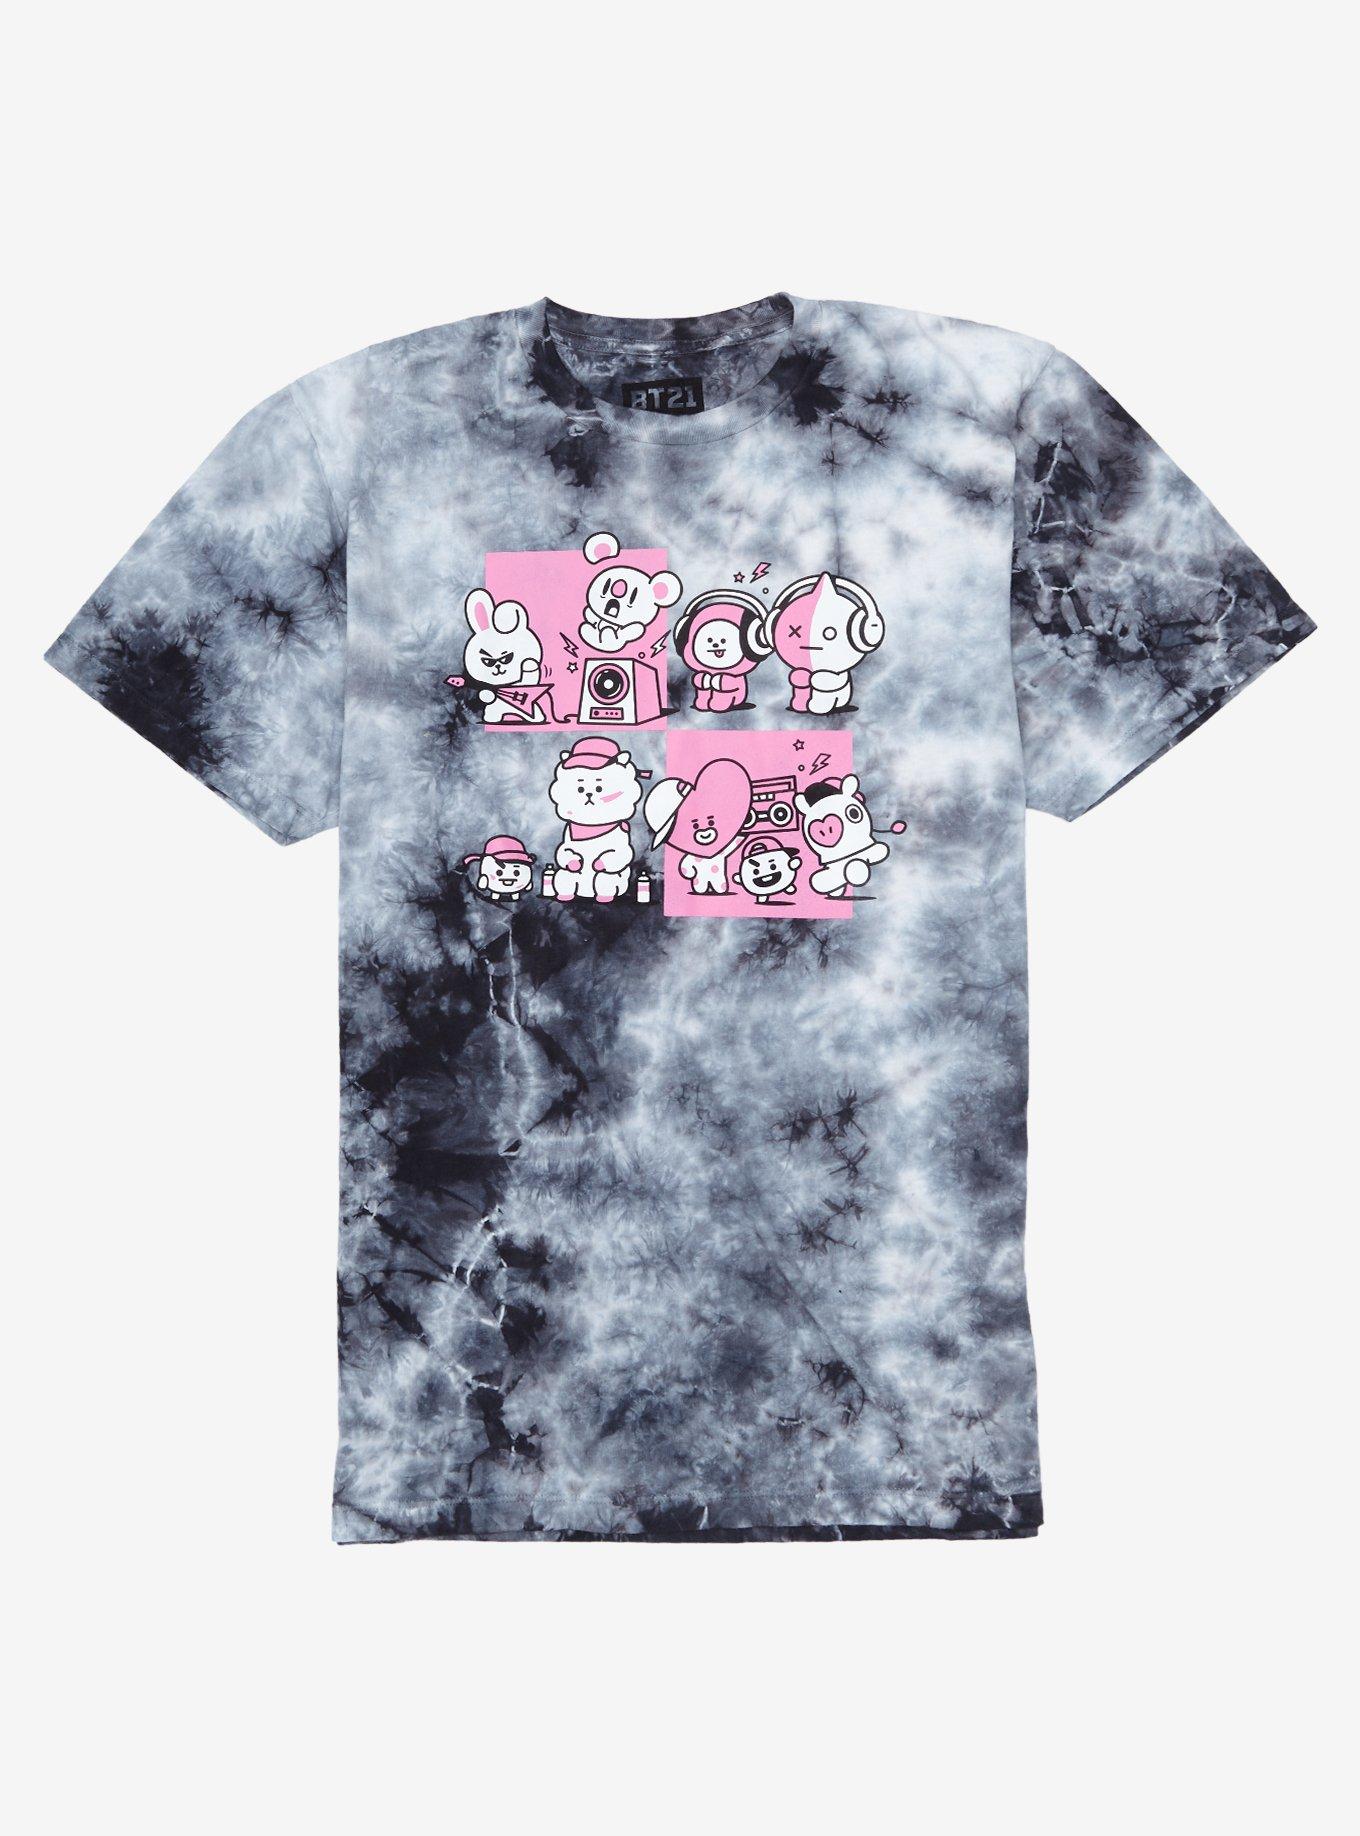 BT21 Music & Squares Tie-Dye Girls T-Shirt, PINK, hi-res